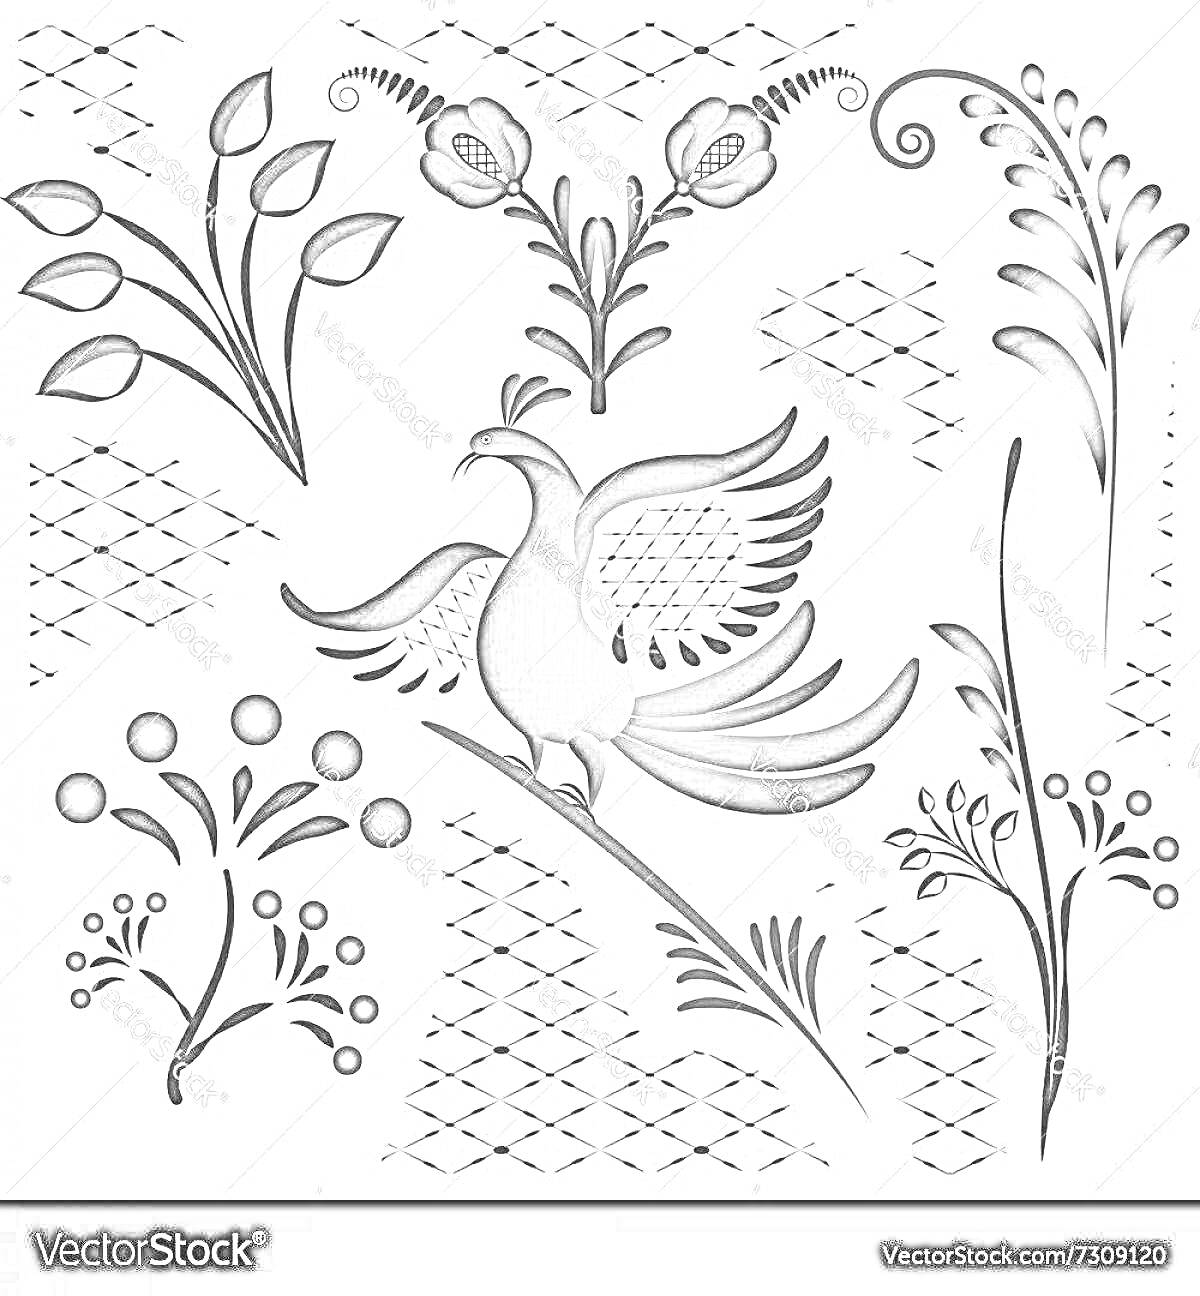 Раскраска Птица в стиле гжель с цветочными элементами и орнаментами, включая листья, цветы, ветки и абстрактные узоры.